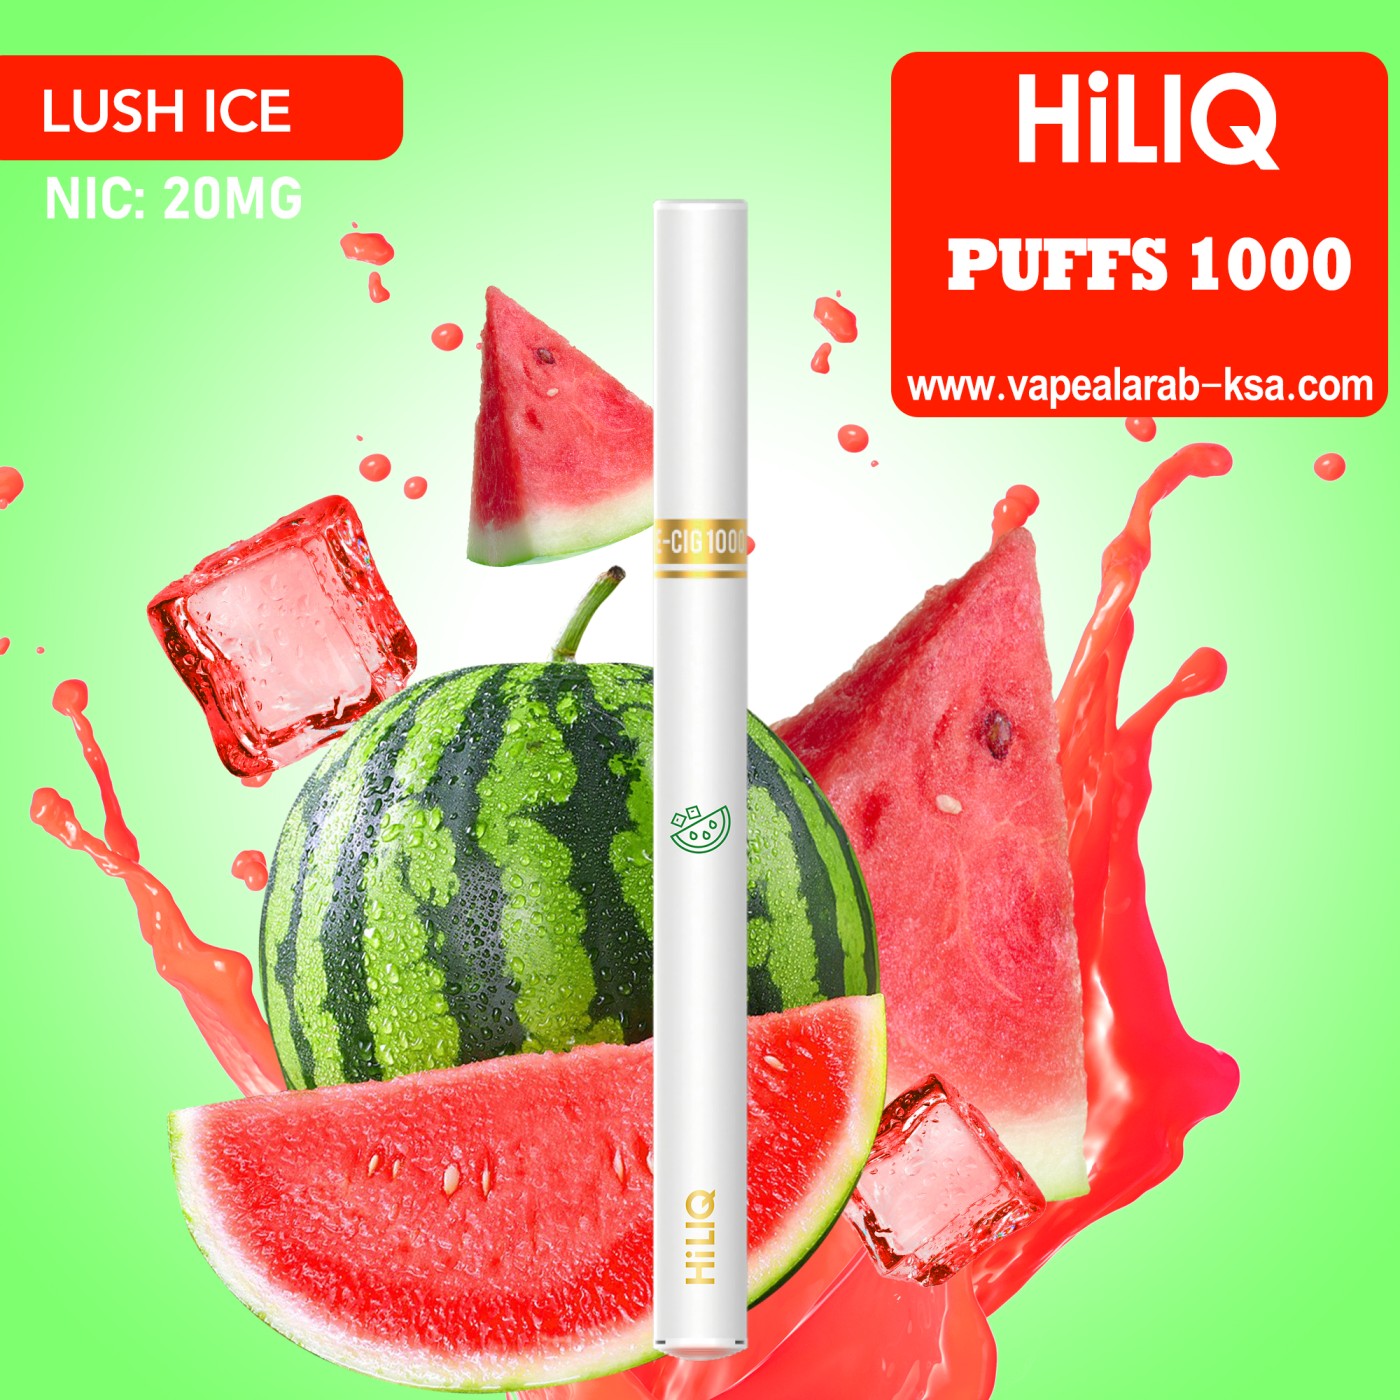 HiLIQ 1000